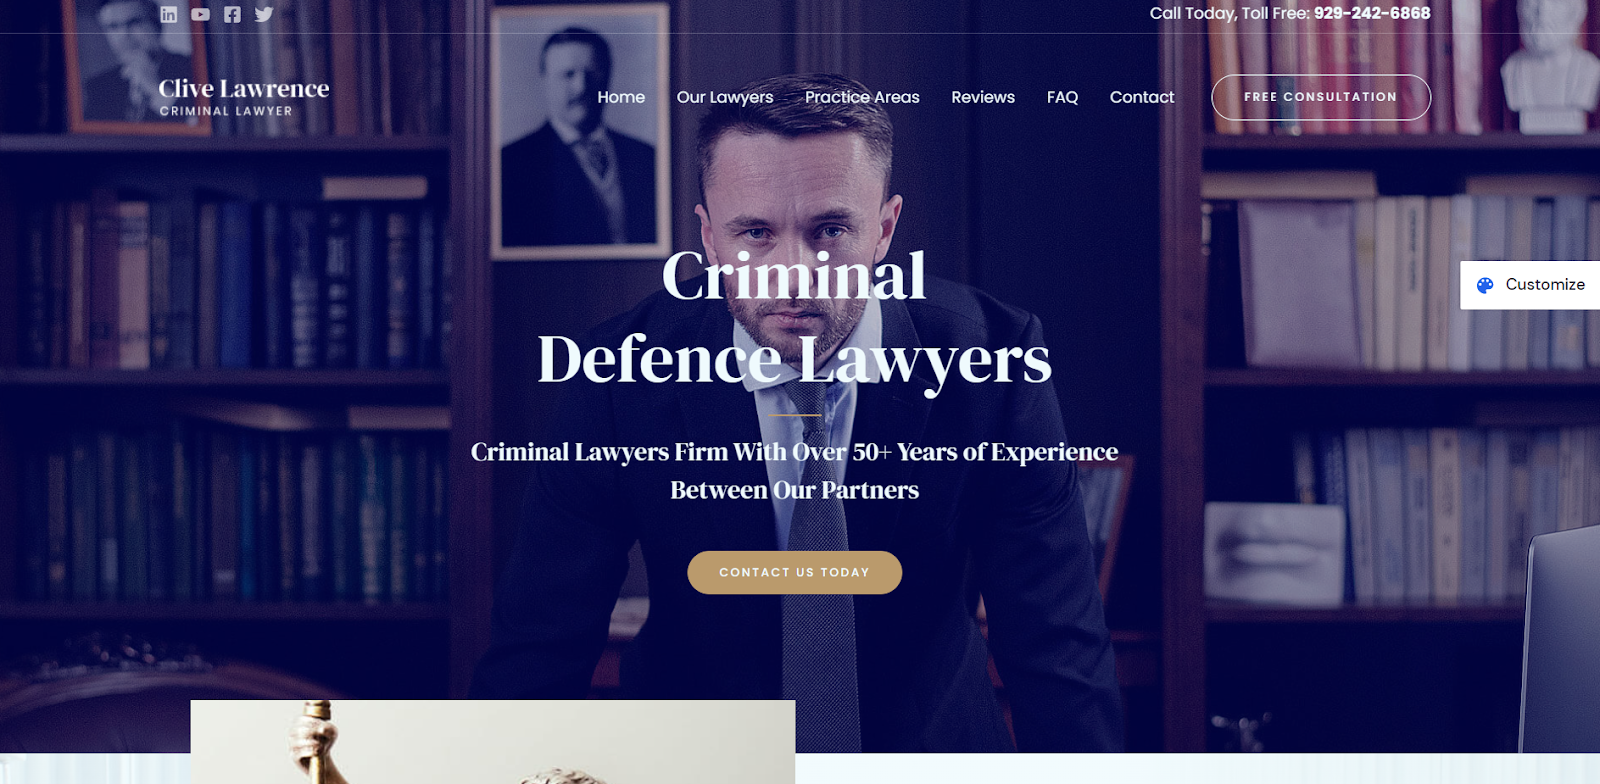 A criminal defense lawyer website